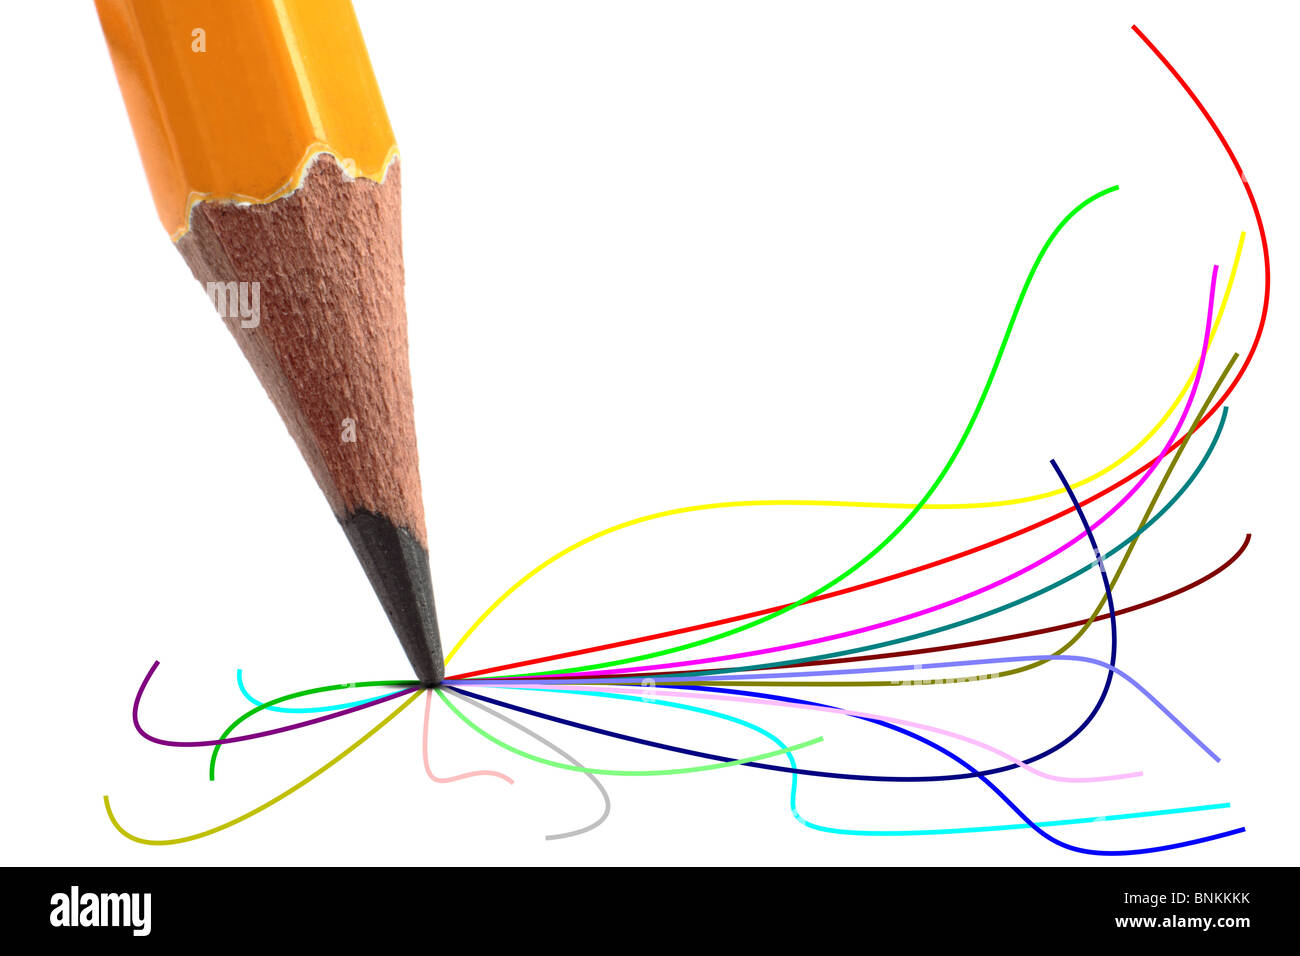 Dessin D'artiste Par Le Crayon Sur Le Papier Photo stock - Image du  retrait, éducation: 116241598